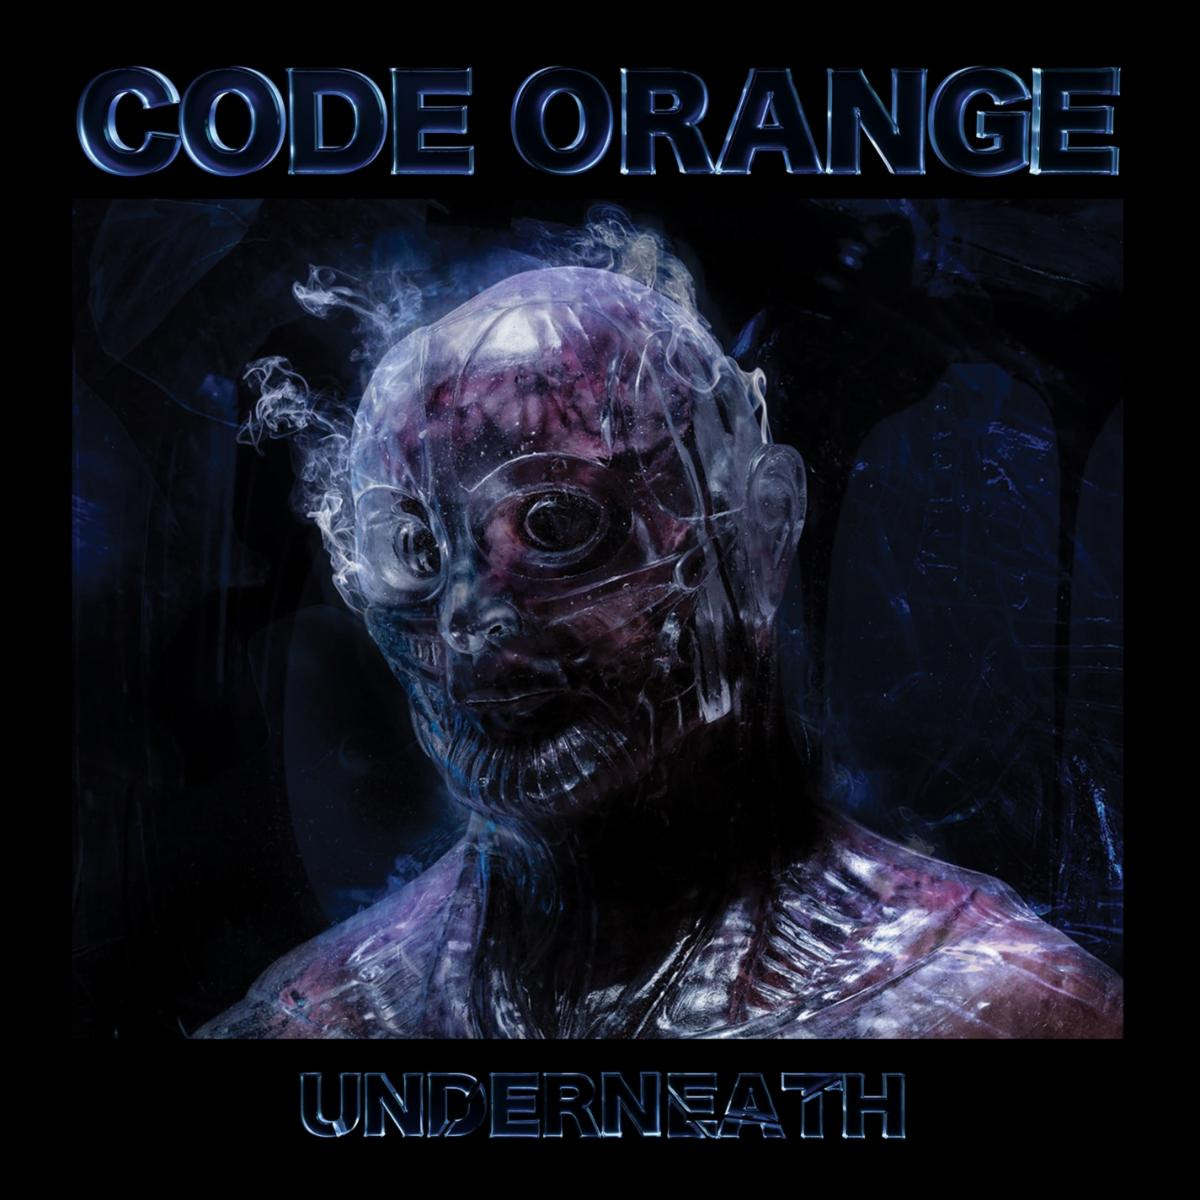 Code-Orange-Underneath-Album-Cover-Artwork.jpg